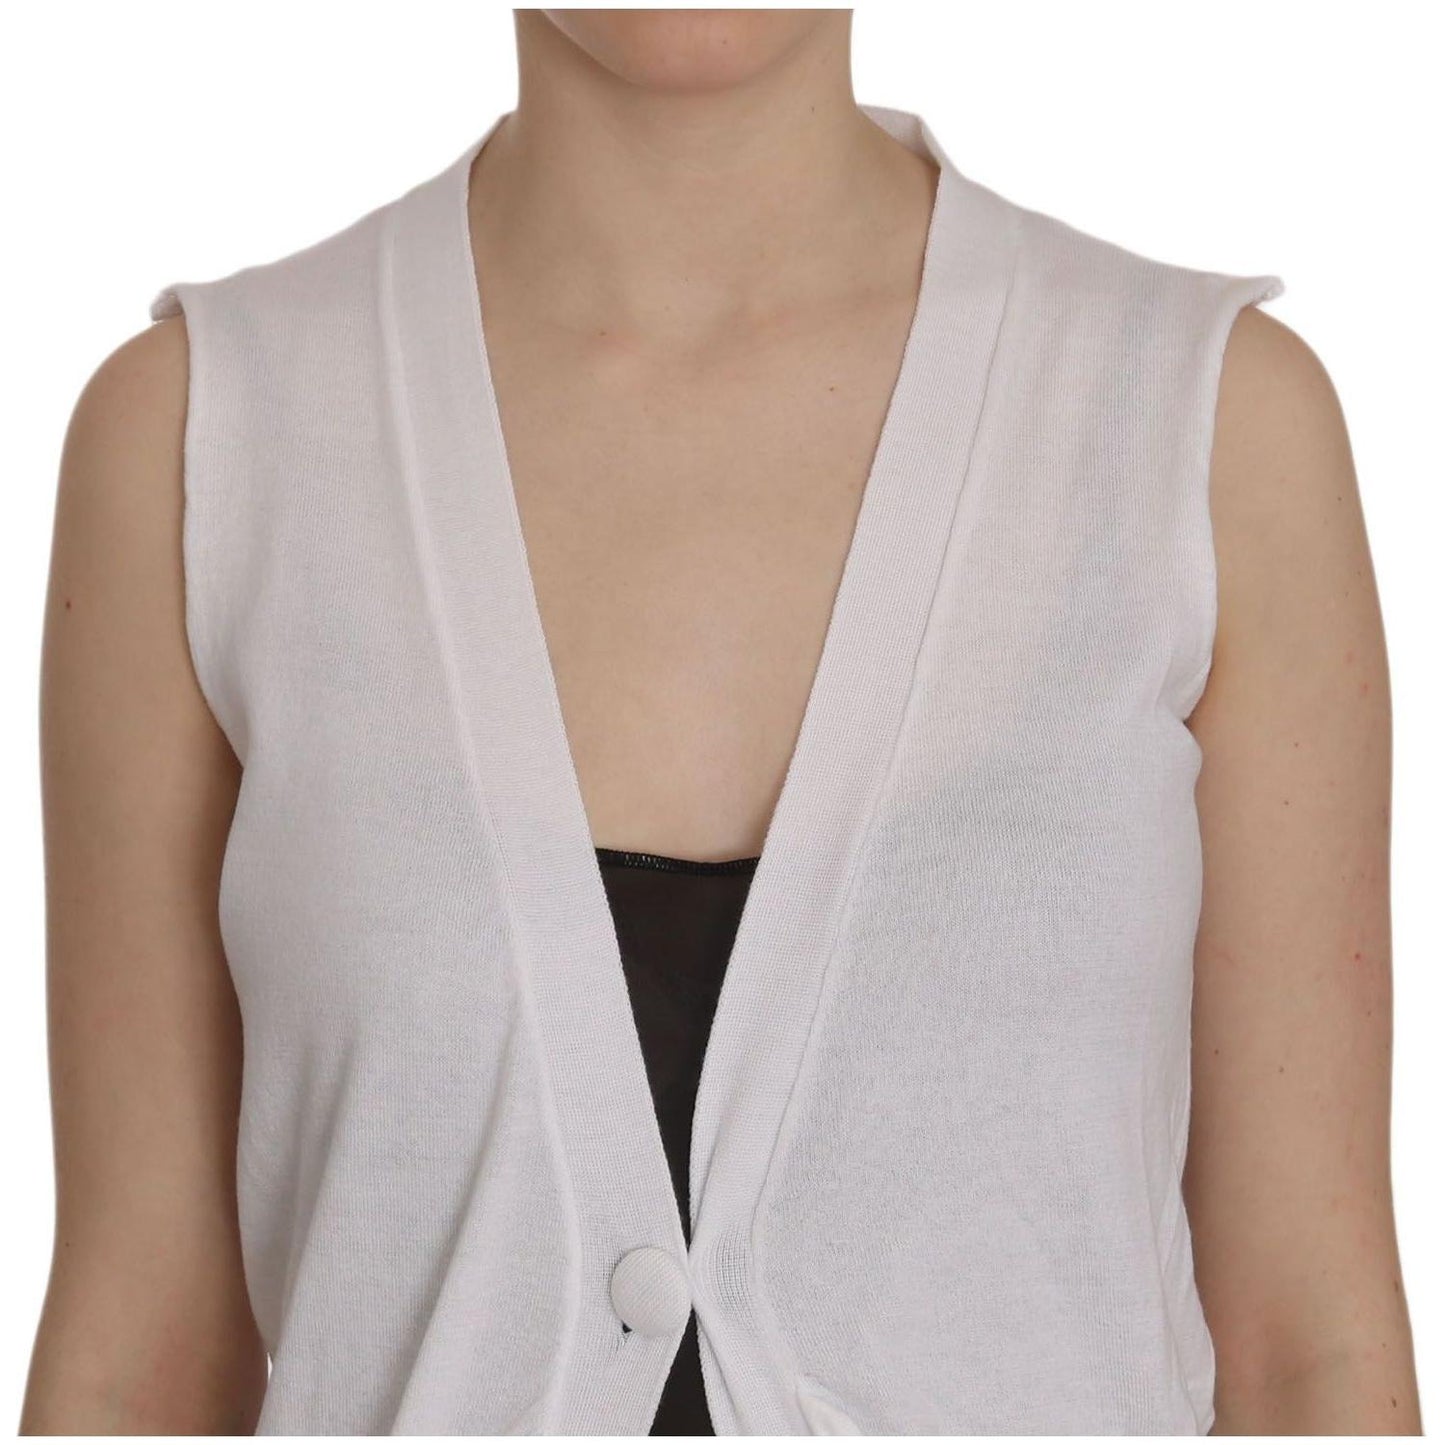 PINK MEMORIES Elegant Sleeveless Cotton Vest in Pristine White white-100-cotton-sleeveless-cardigan-top-vest IMG_1919-3ba57b85-e63.jpg